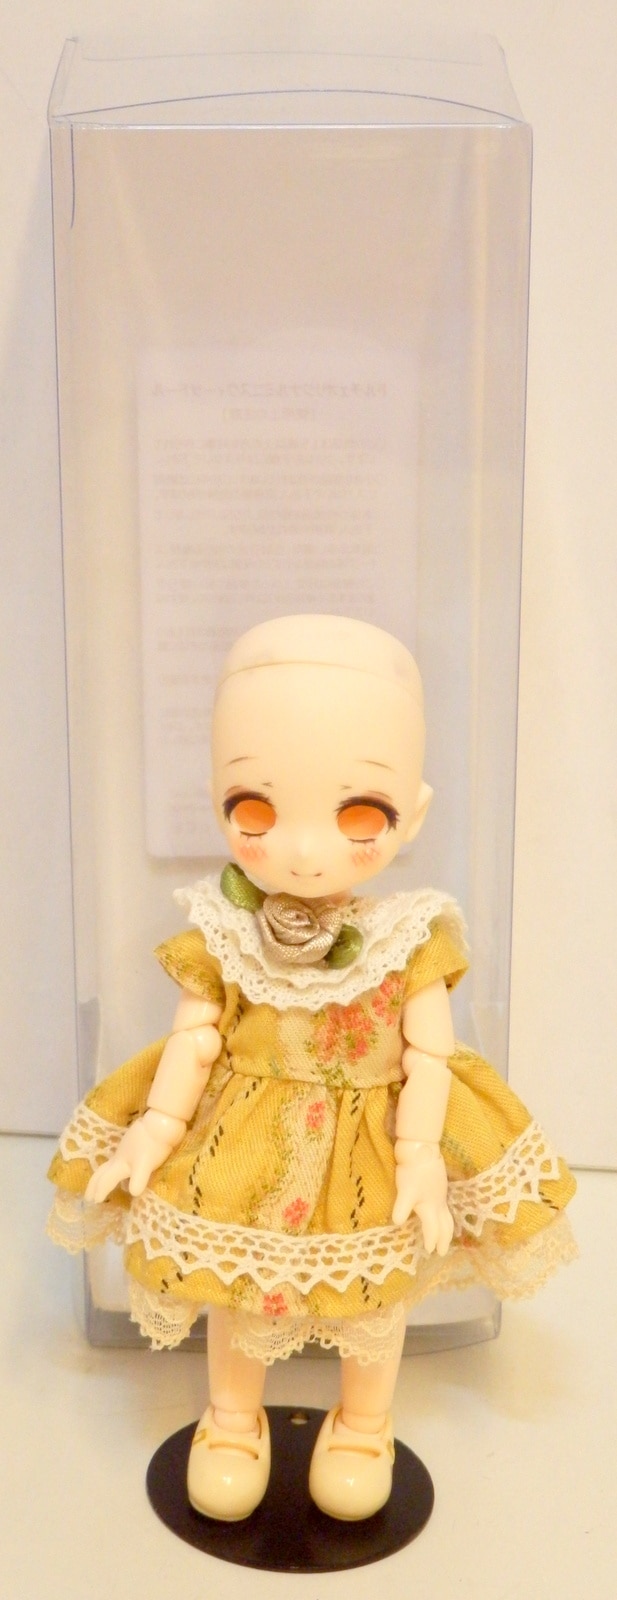 気質アップ ミニスウィーツドール マオ おもちゃ/人形 - www.nurse